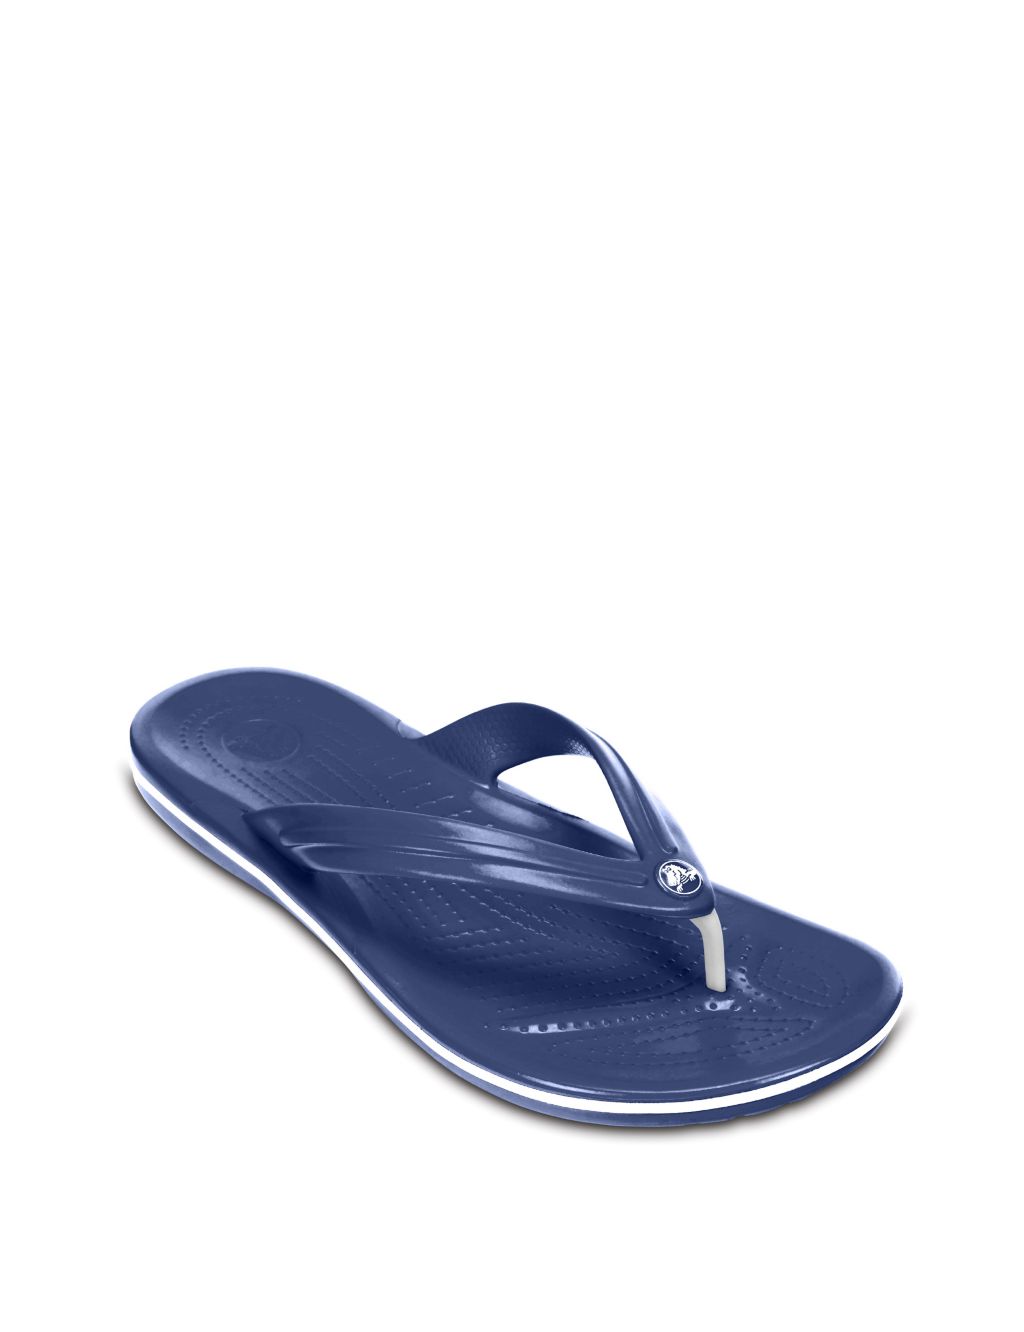 Crocband™ Flip Flops image 2